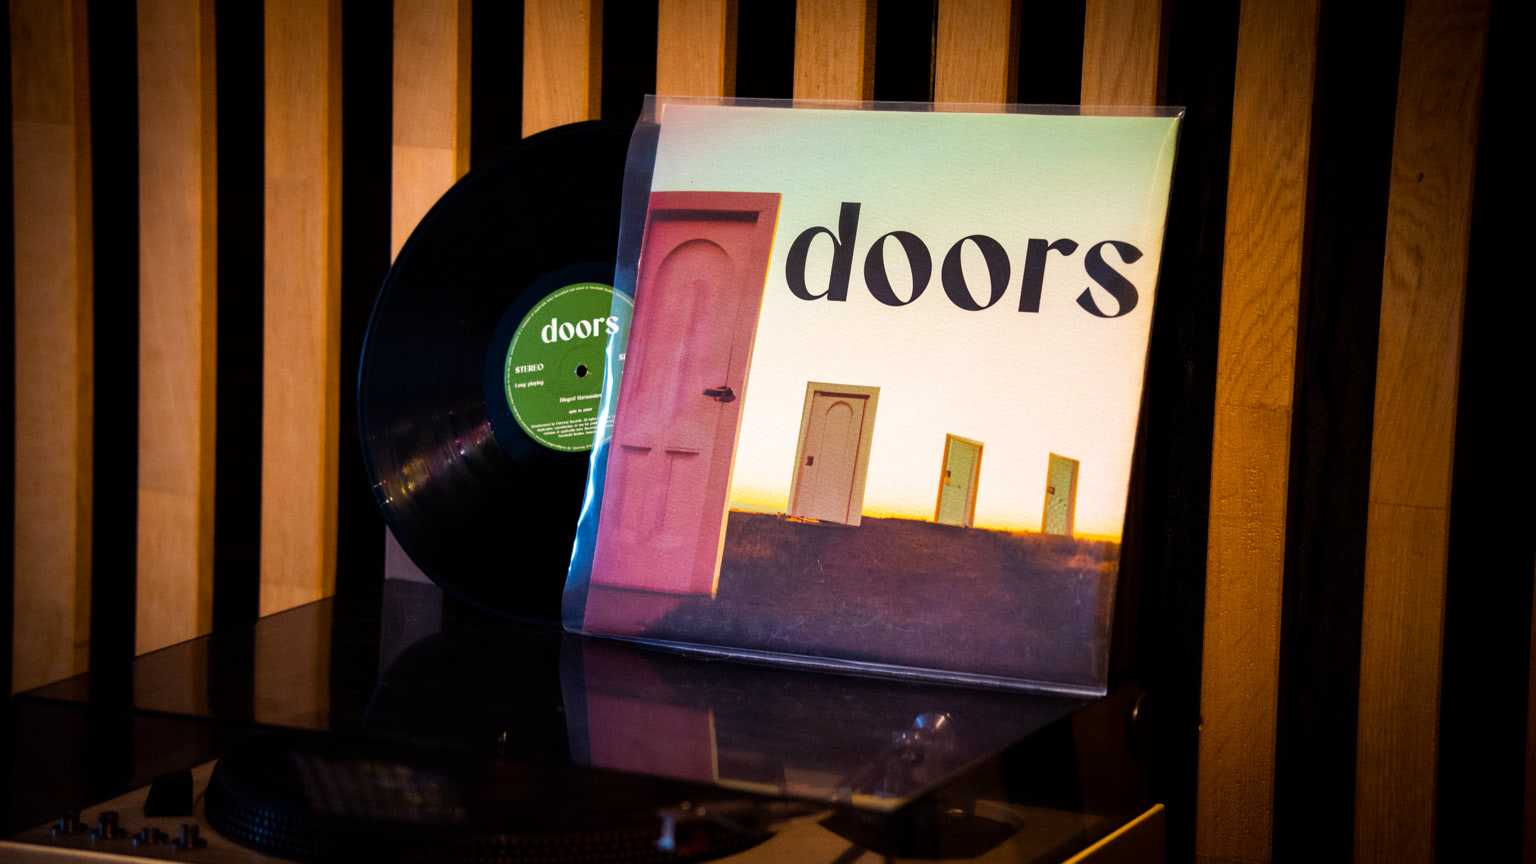 The Original Doors Vinyl